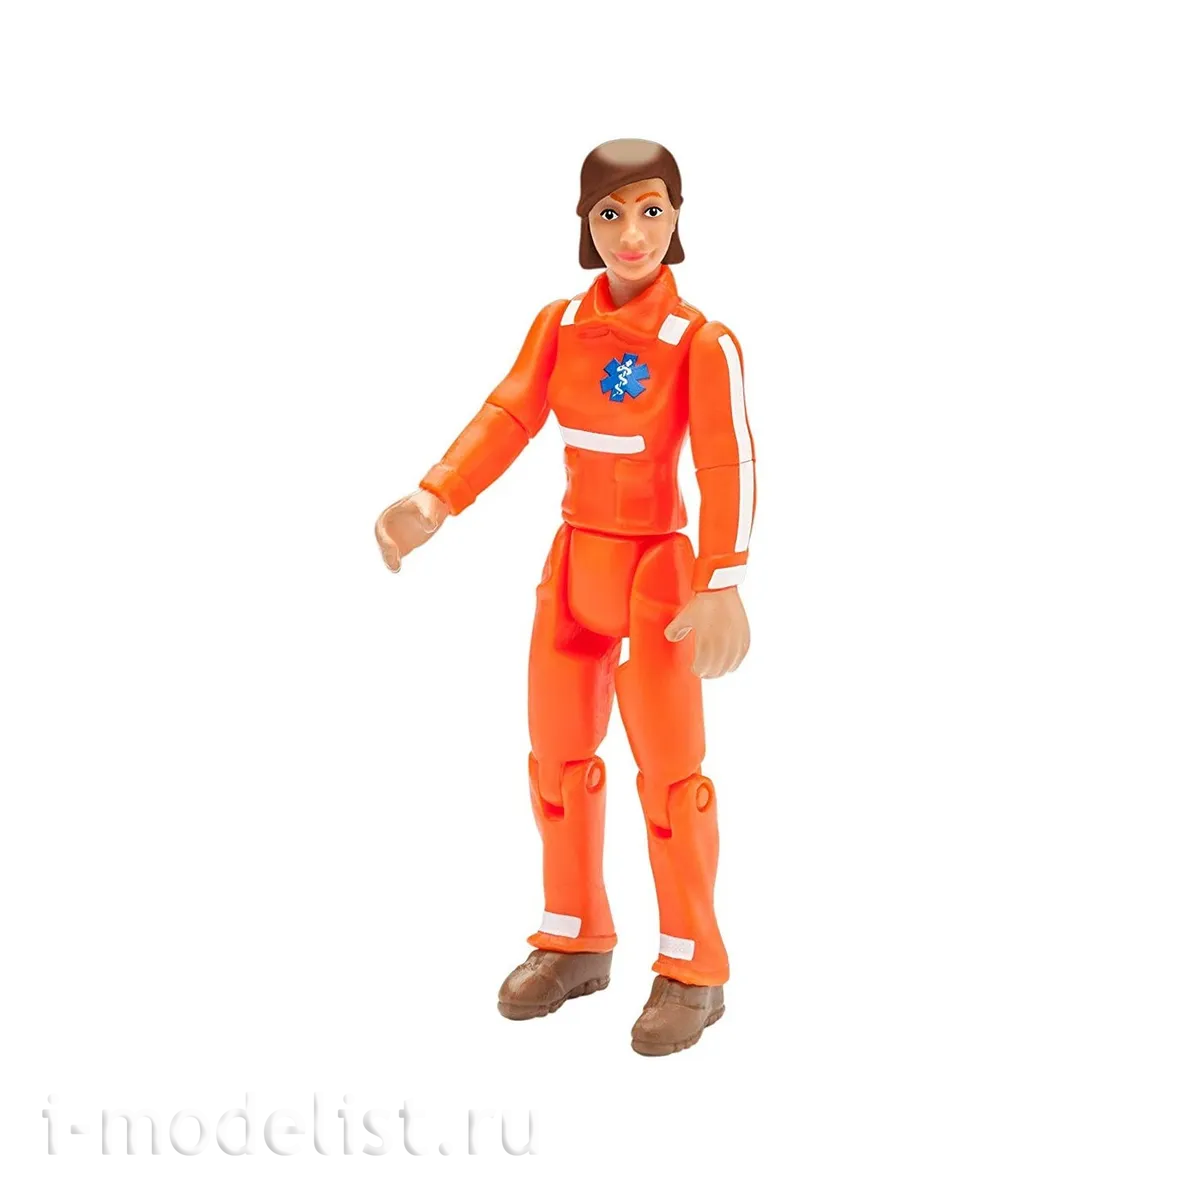 00756 Revell Doctor Figurine (female)